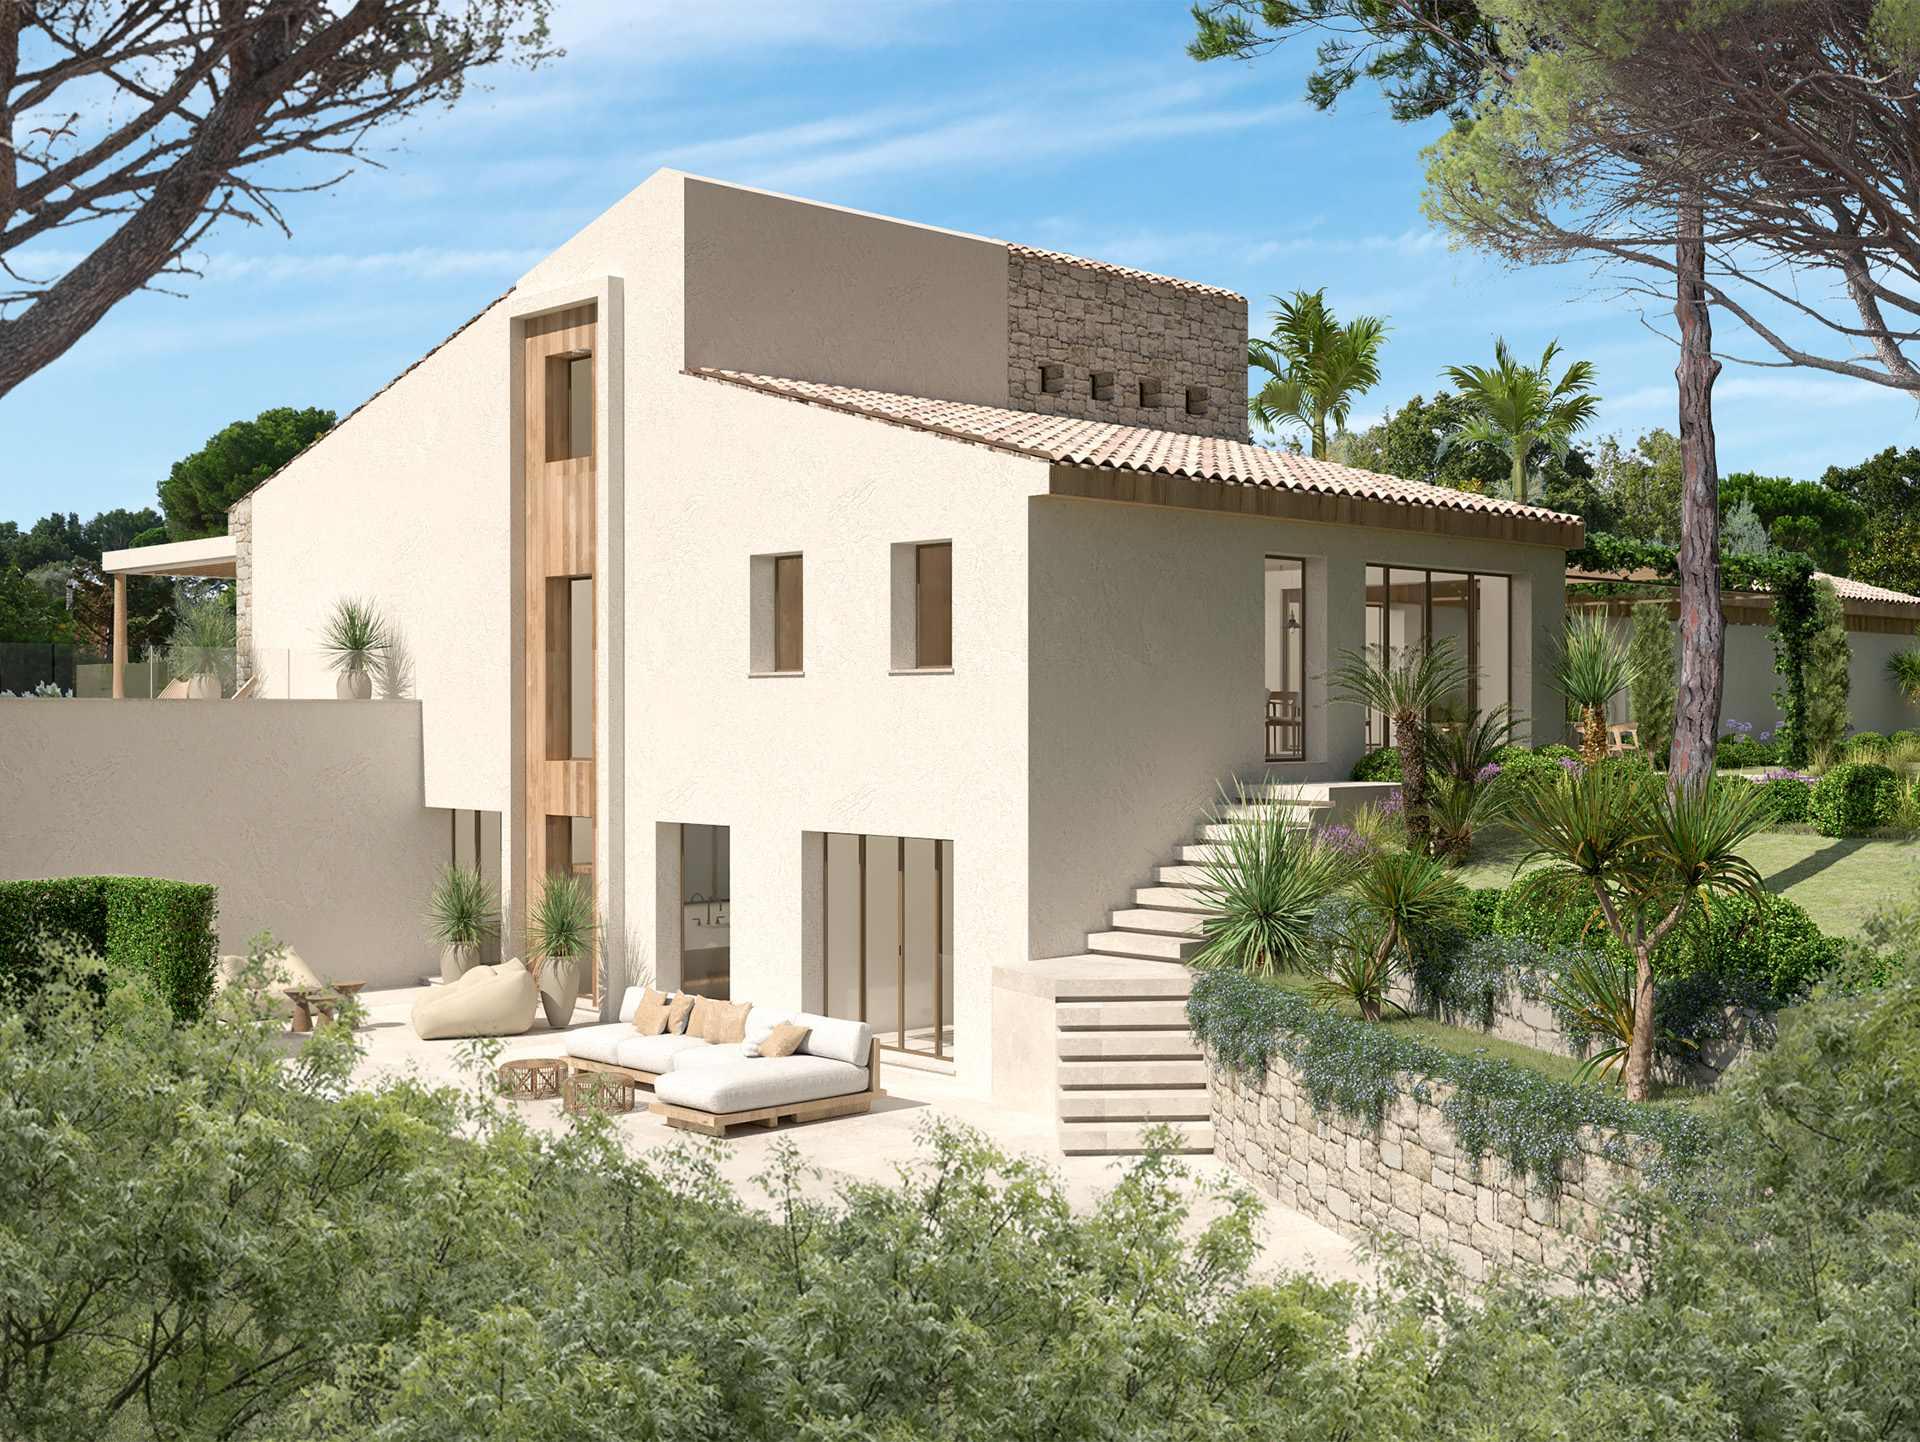 Villa modern d'architecte a inspiration provencale dans la region de Cannes.